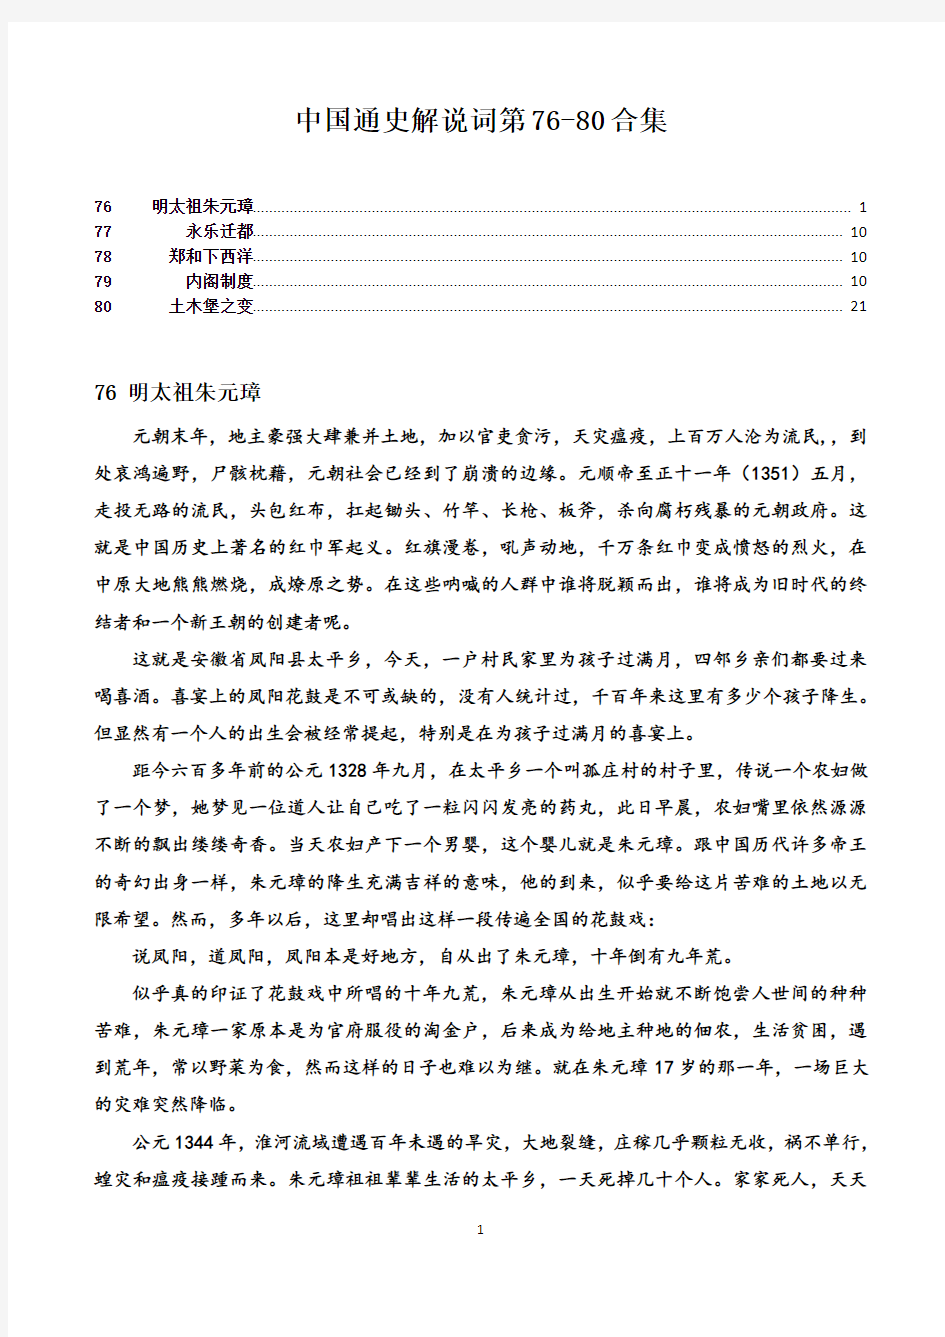 中国通史解说词第76-80合集(缺77.78.80)